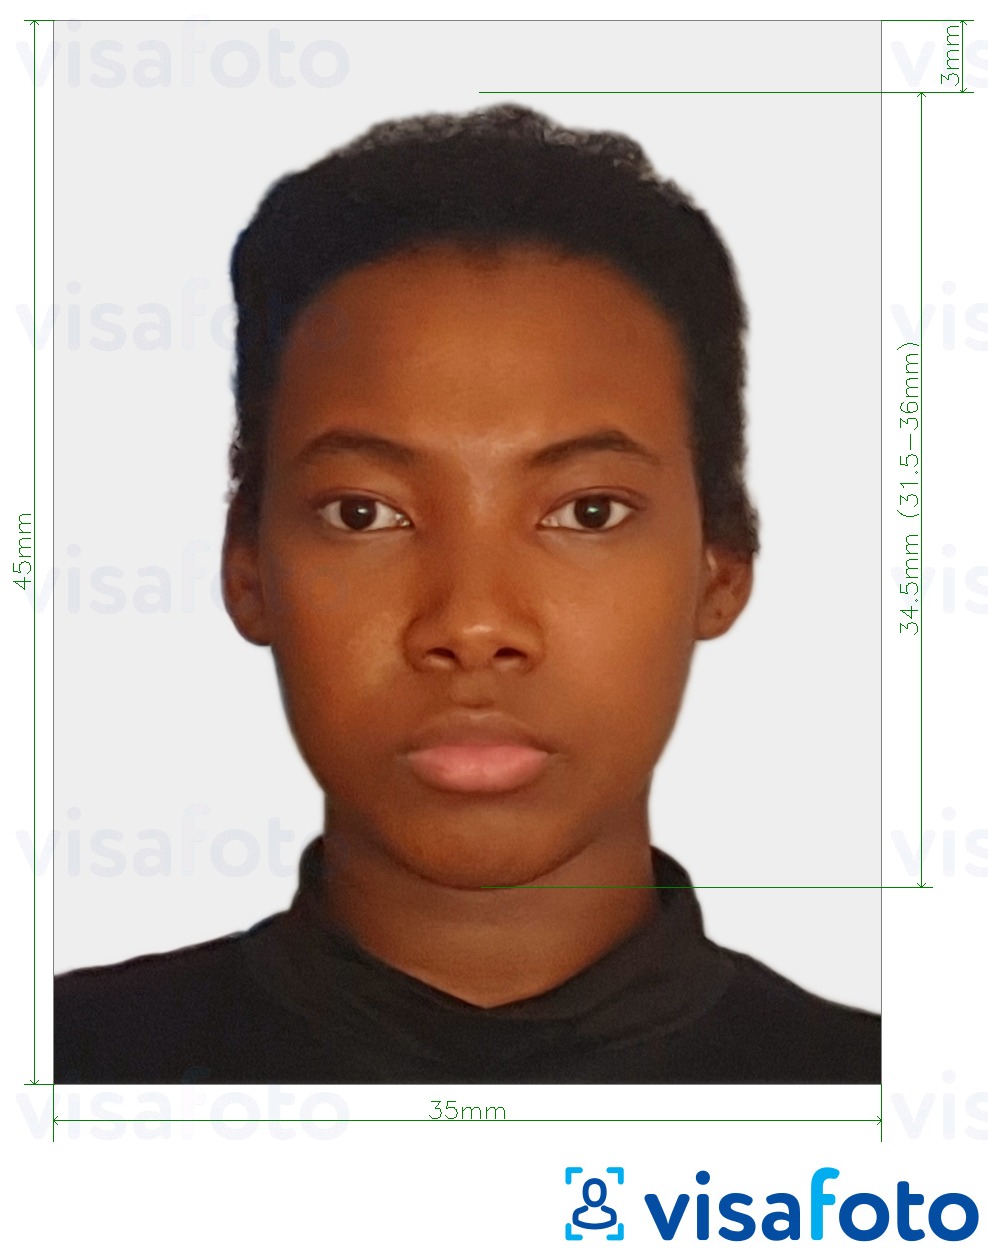 Образец фотографии для ЮАР паспорт 35х45 мм (3,5x4,5 см) с точными размерам...